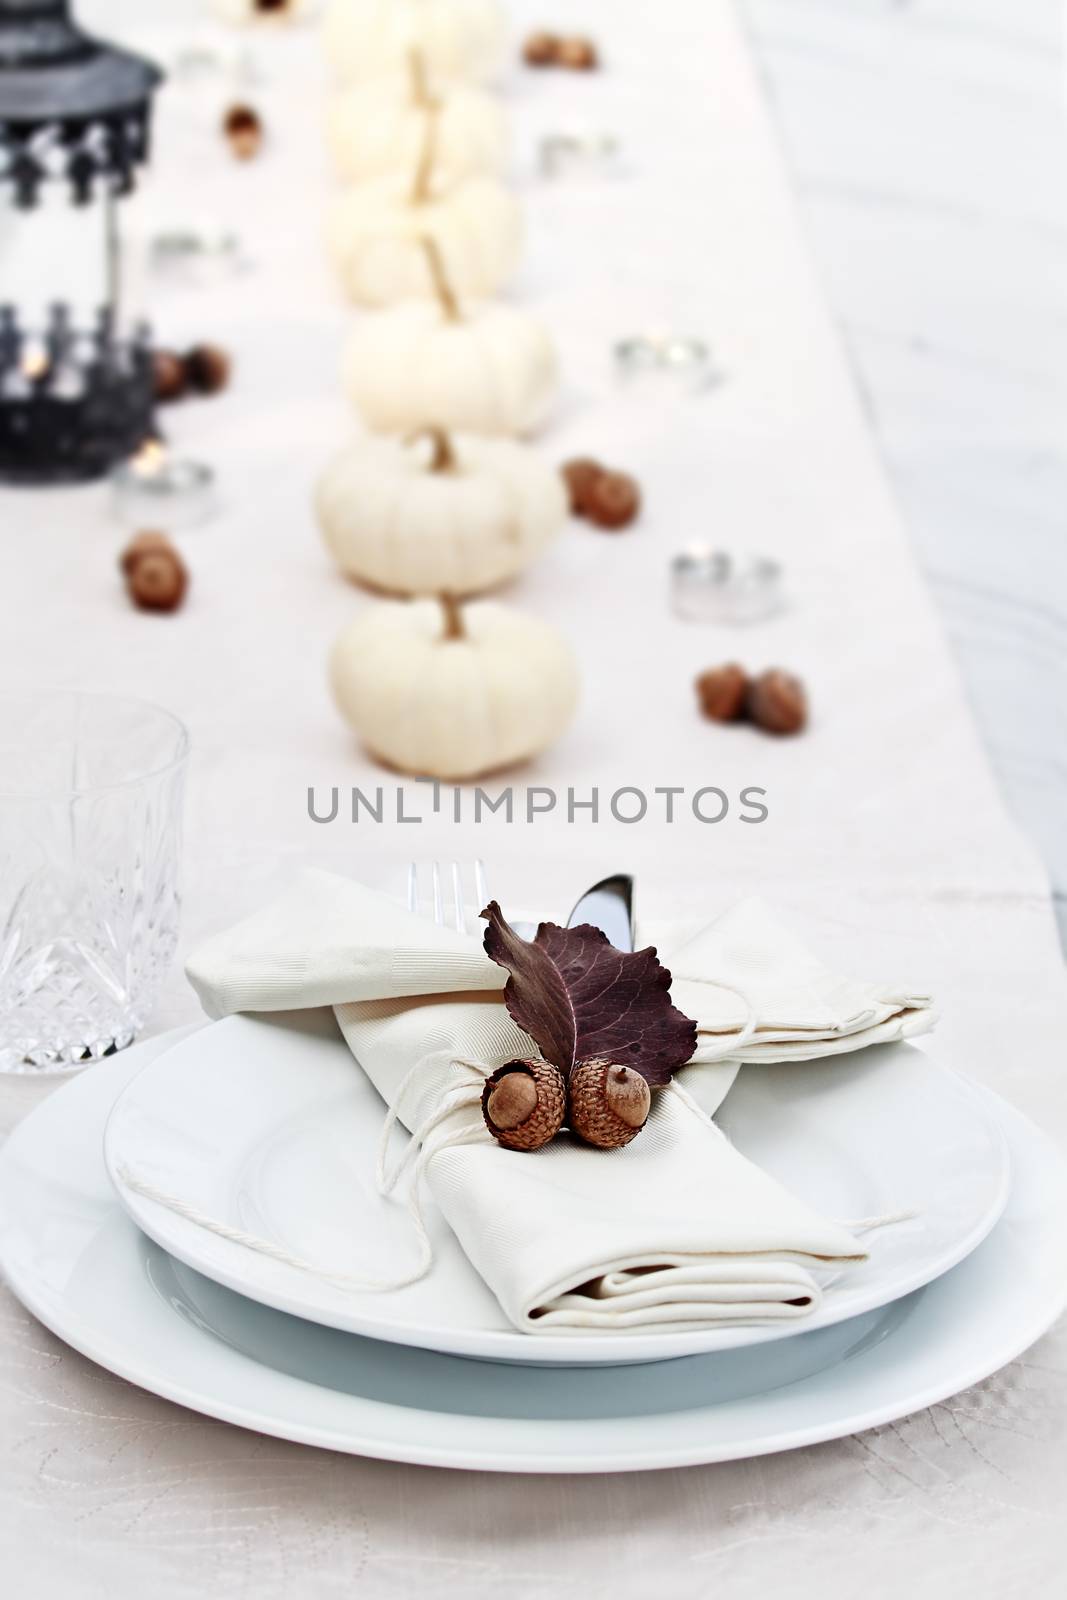 Festive Autumn Table by StephanieFrey